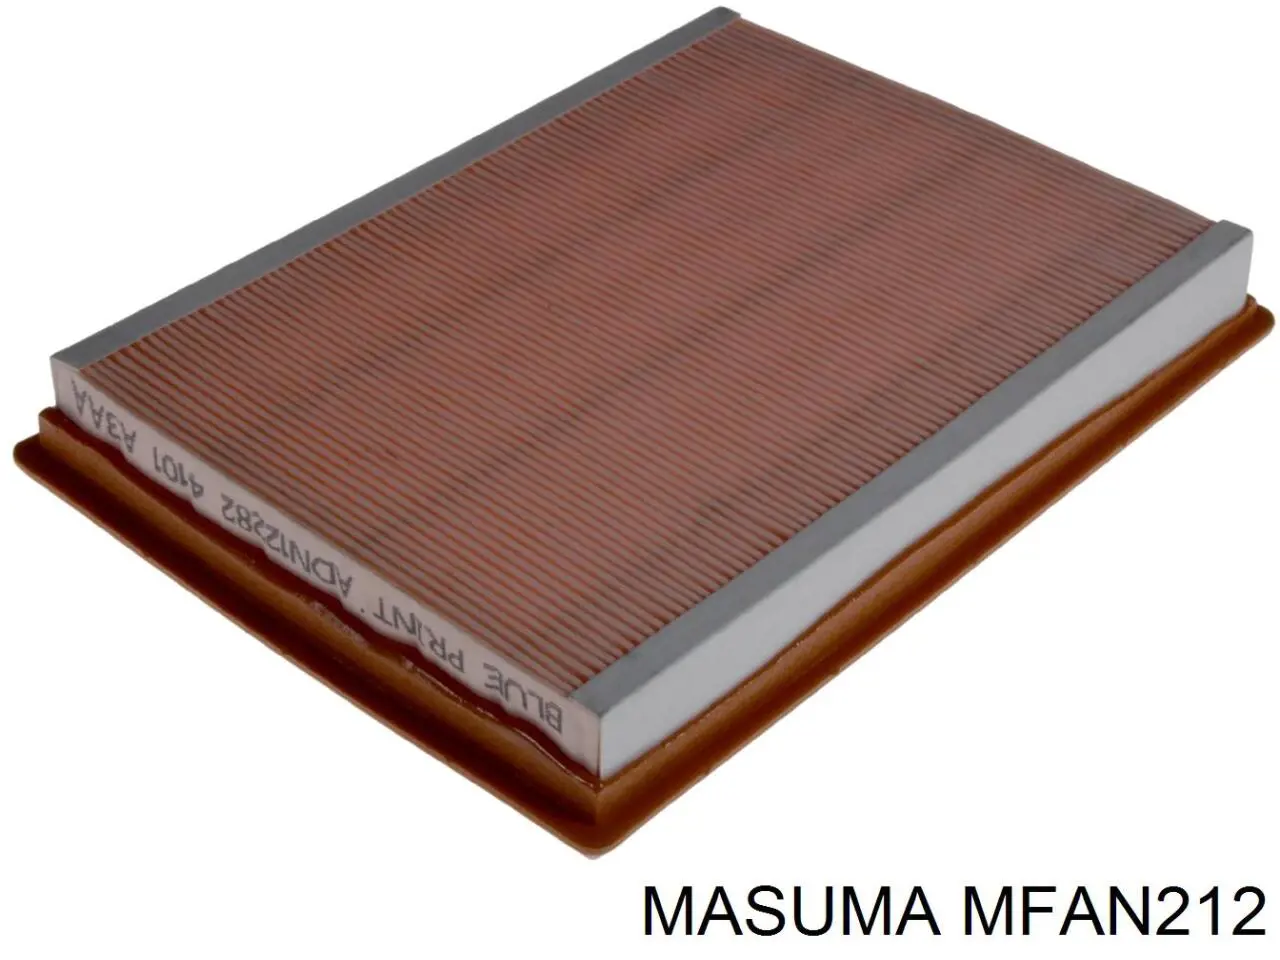 MFAN212 Masuma воздушный фильтр